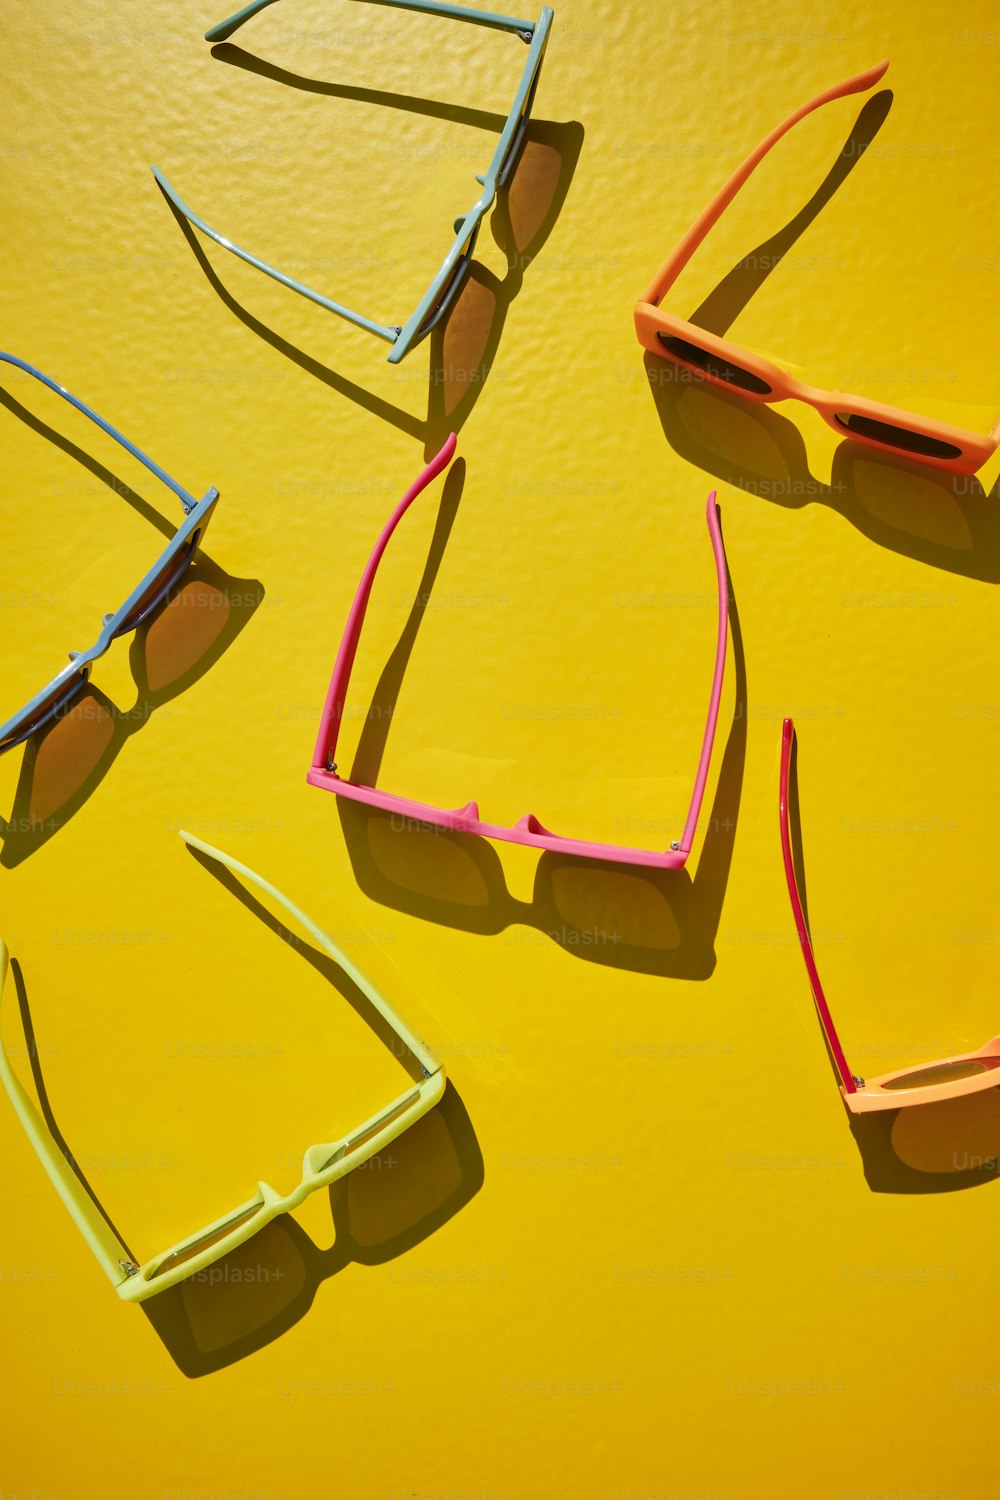 quatre paires de lunettes de soleil posées sur une surface jaune